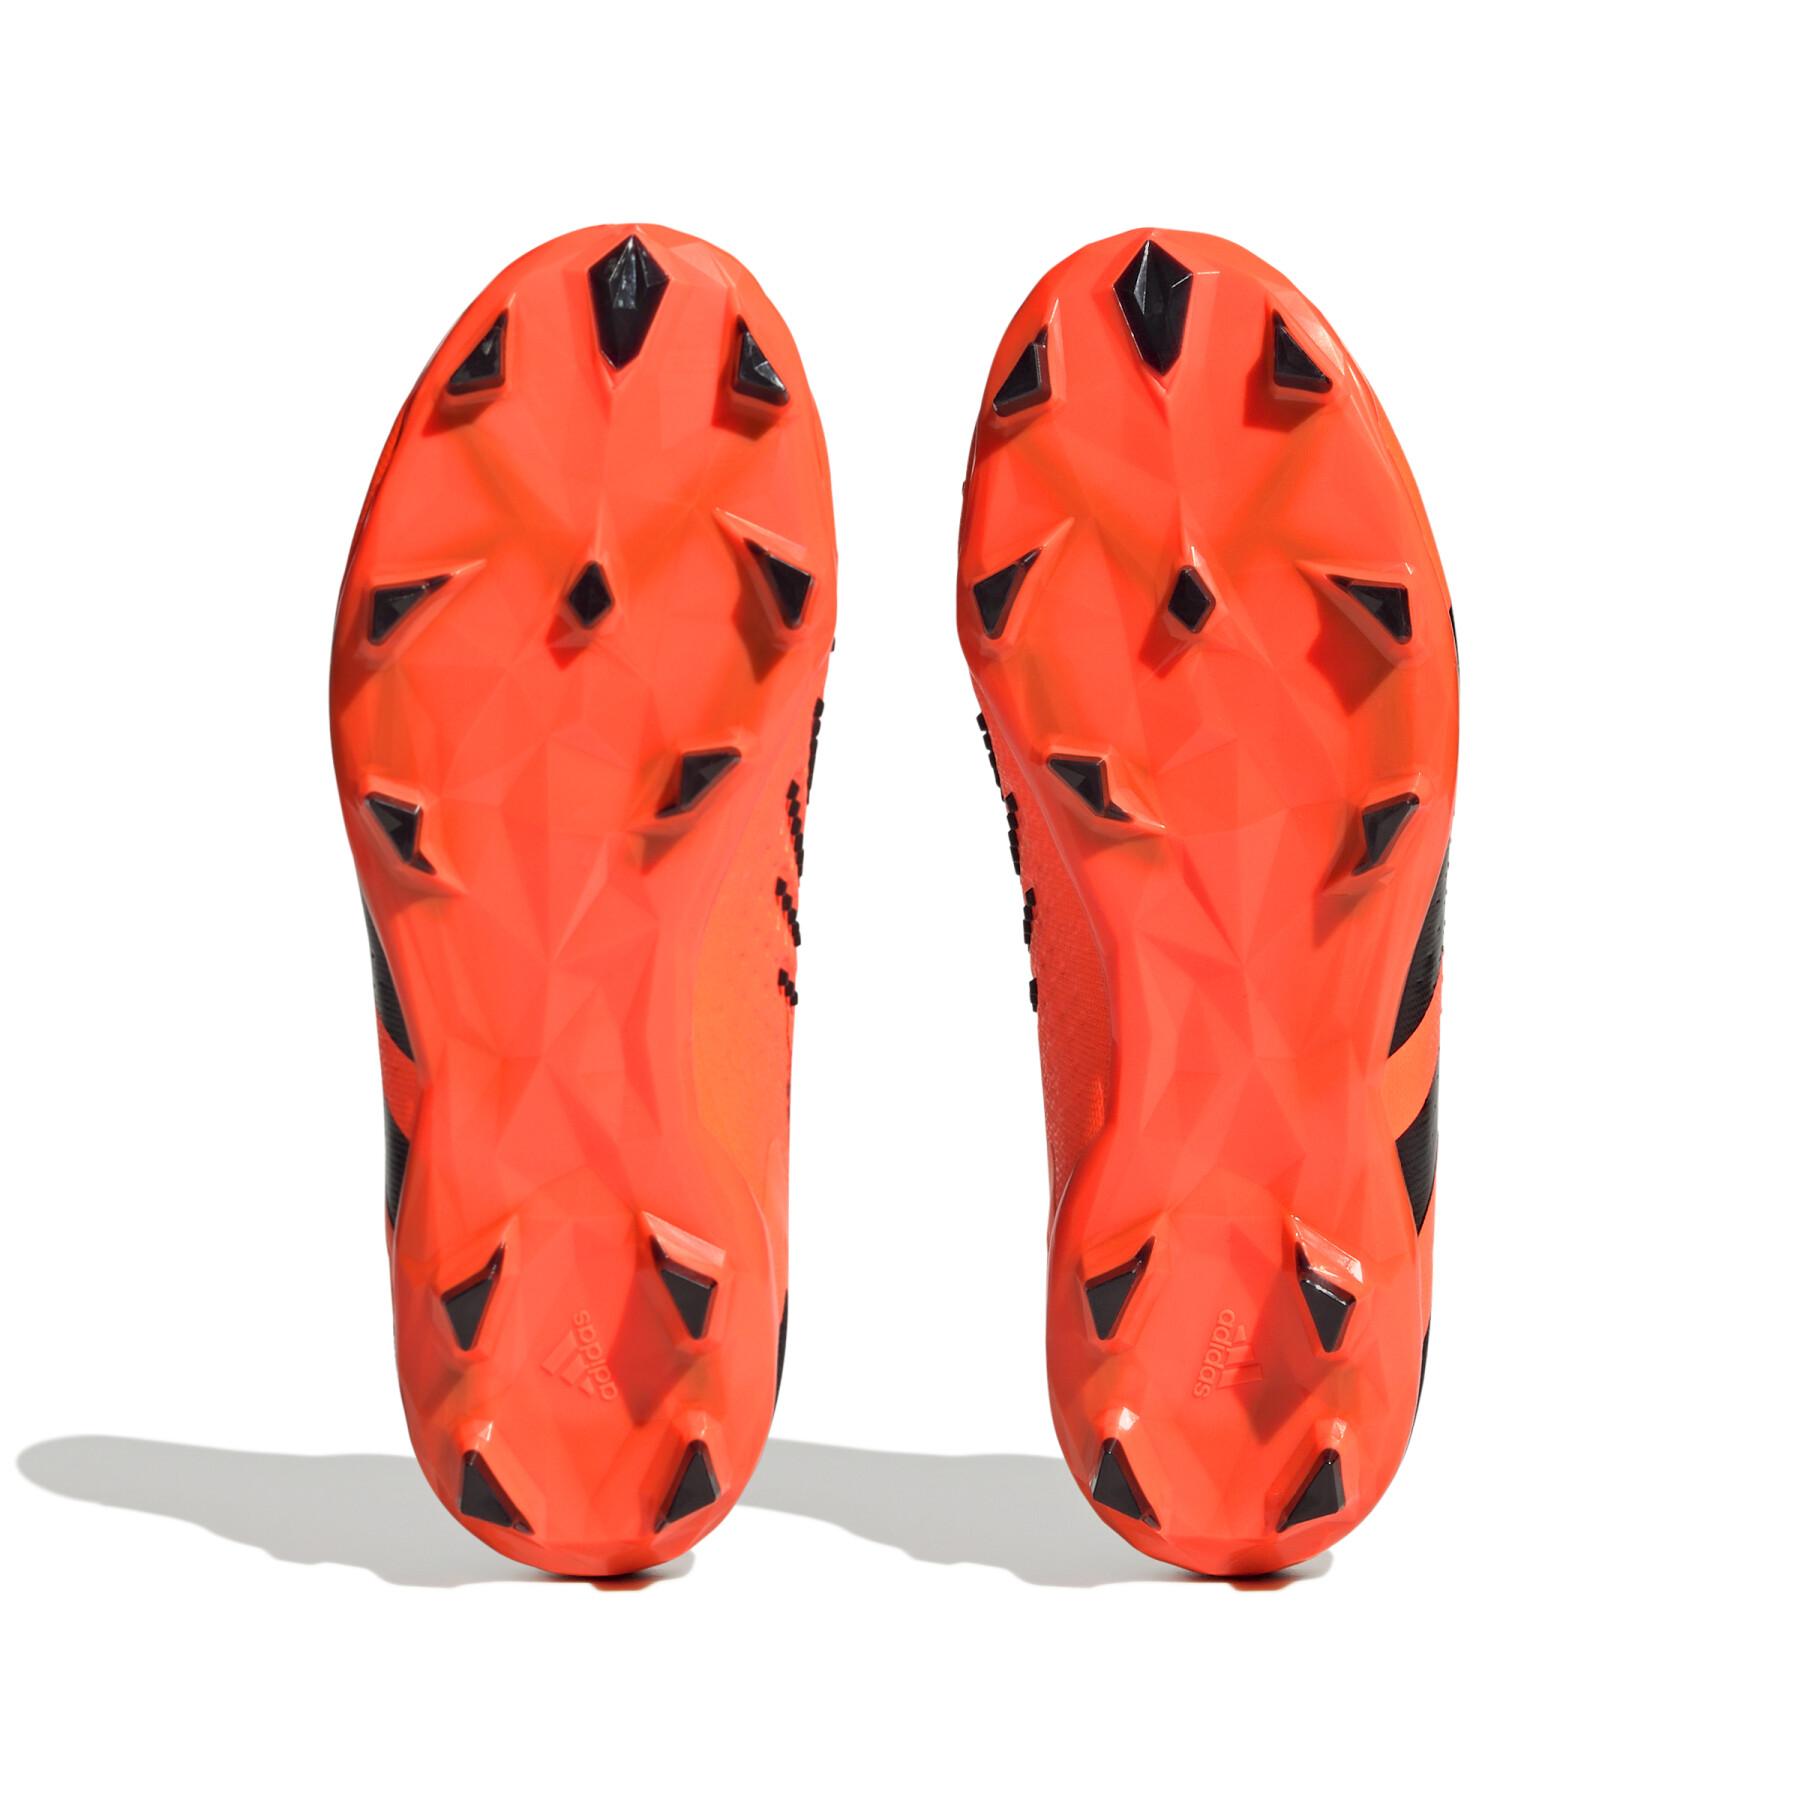 Sapatos de futebol para crianças adidas Predator Accuracy+ Heatspawn Pack